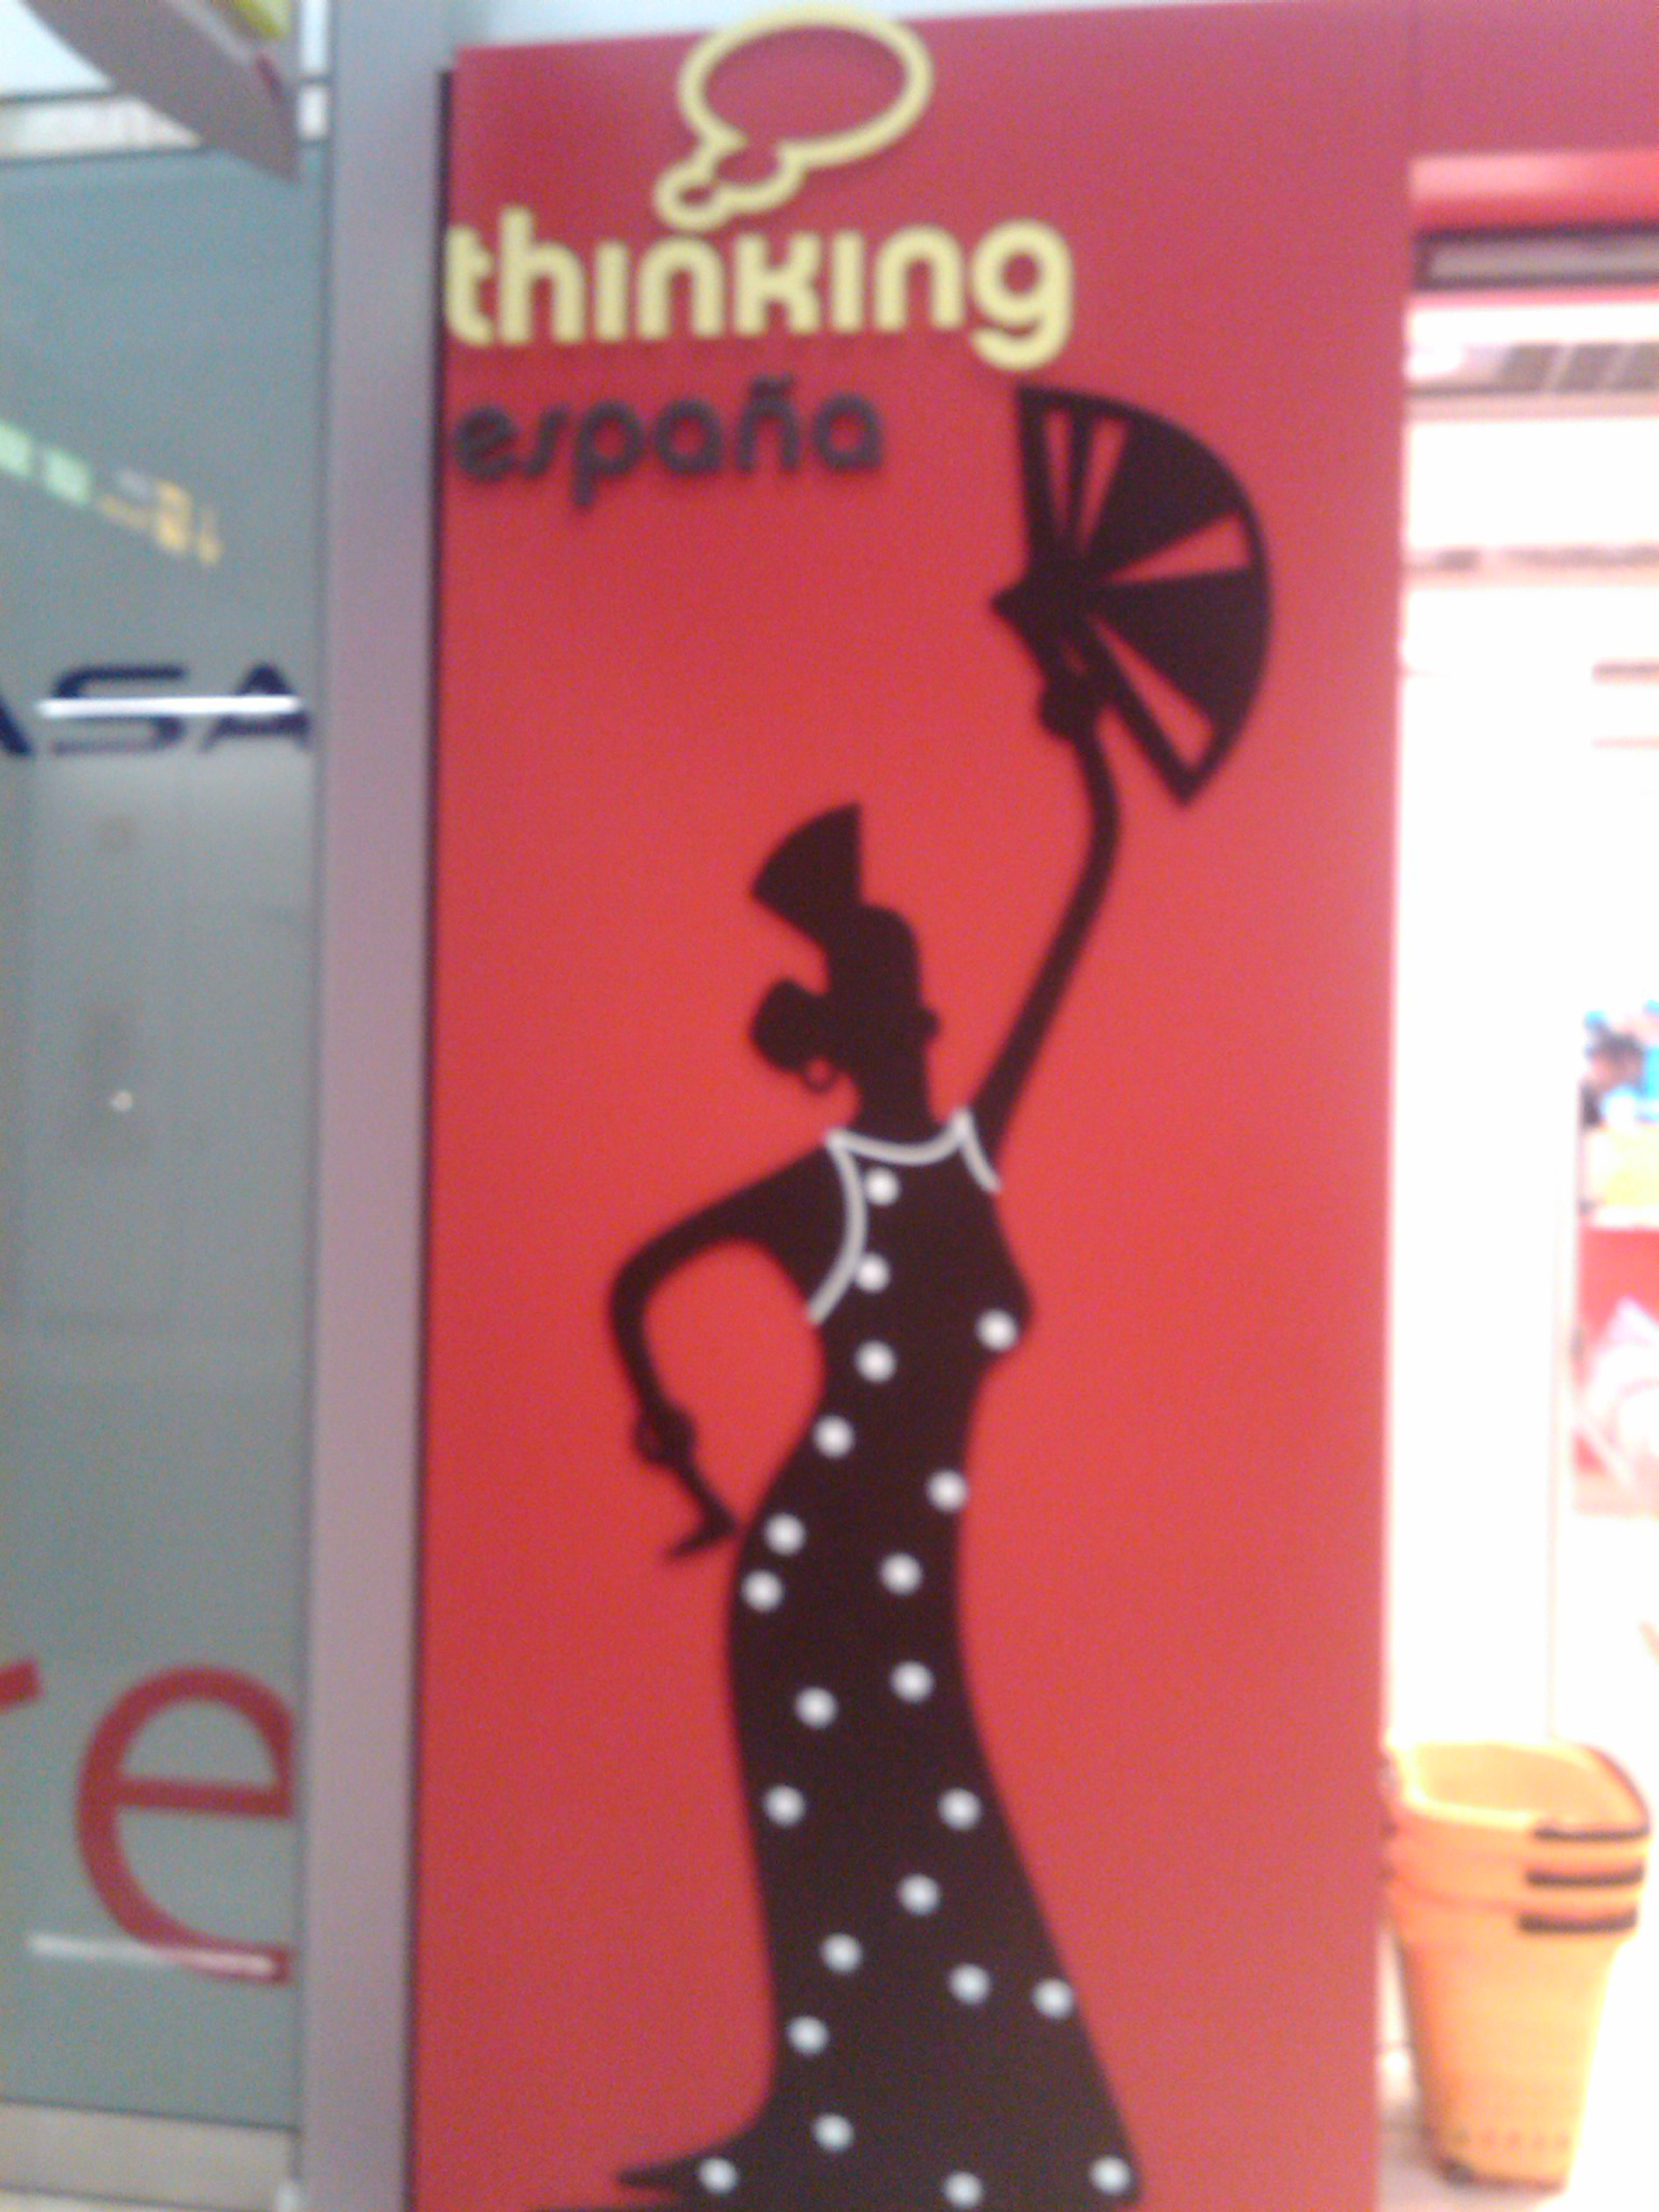 Logo de la tienda "Thinking España" en la T4 de Barajas (Pedro J. Oiarzabal)